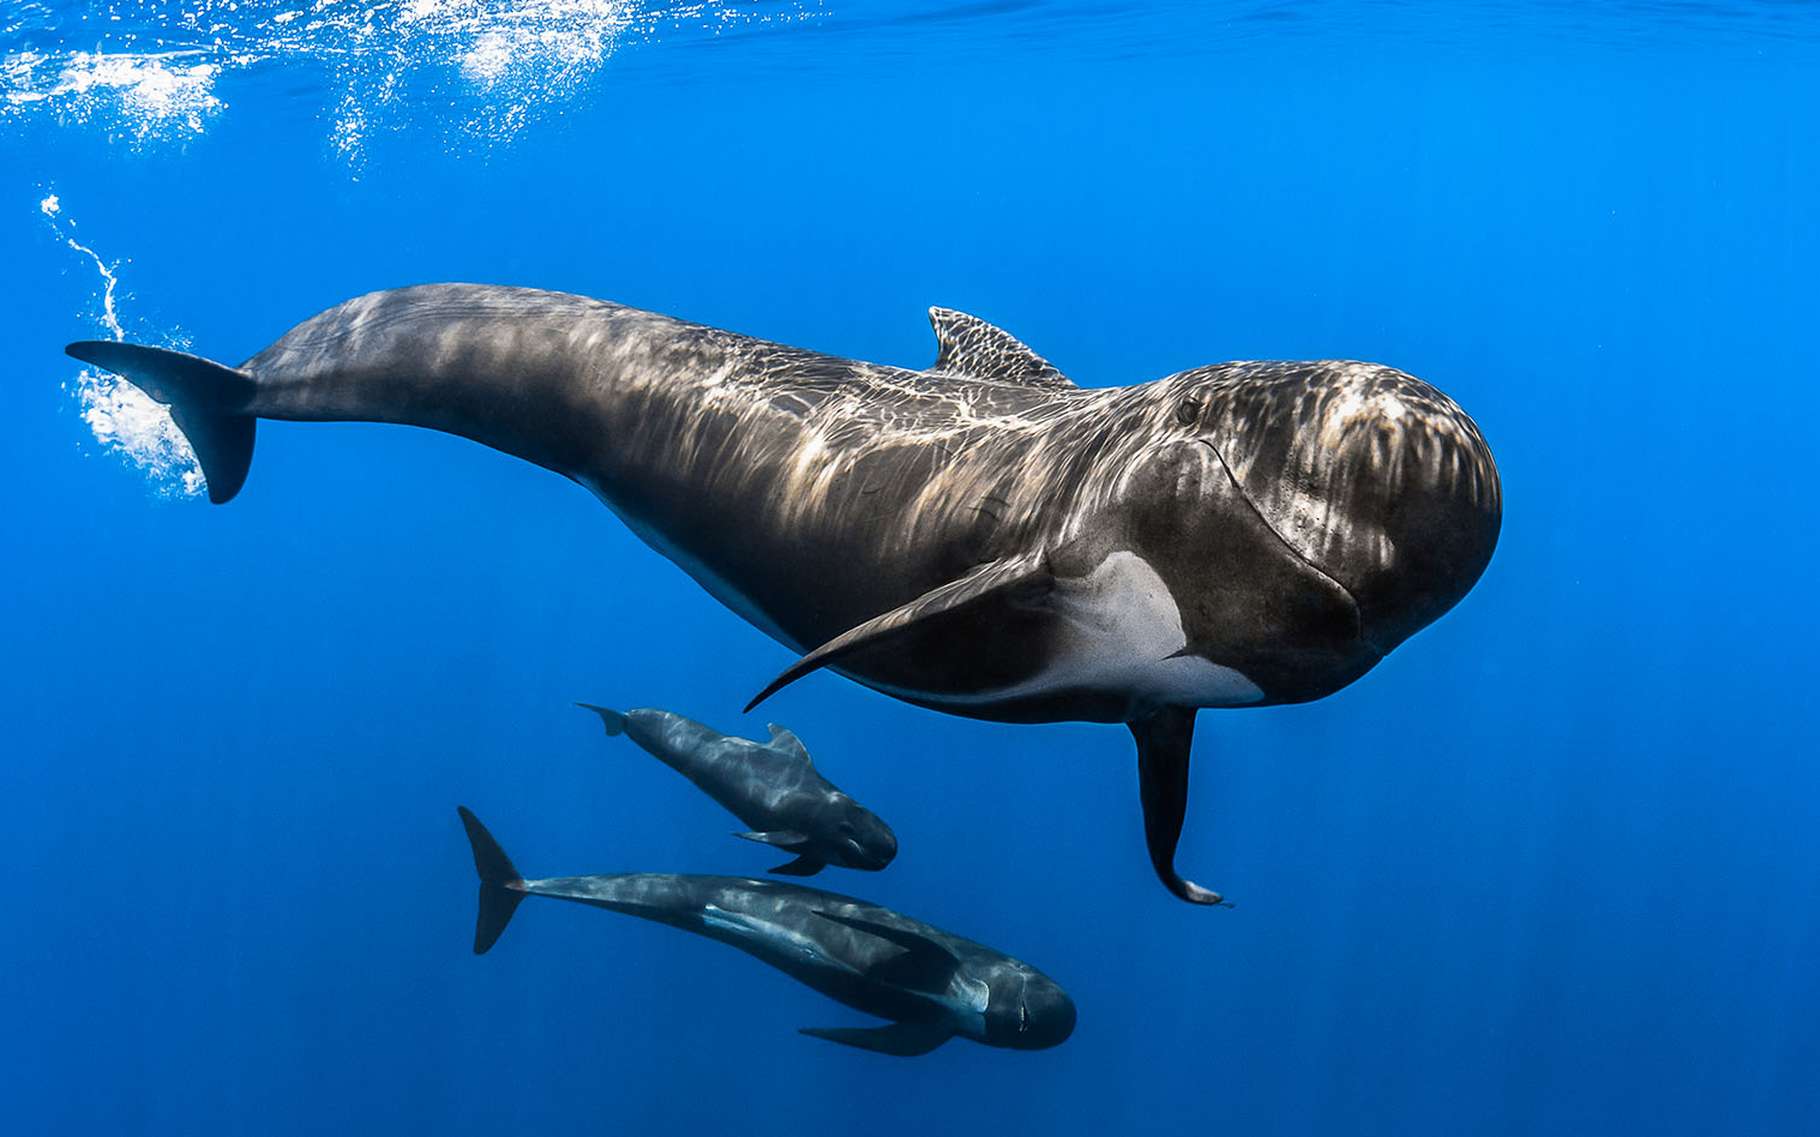 Le globicéphale (Globicephala) est un cétacé de la famille des dauphins océaniques, ici surpris dans le sanctuaire Pelagos, un sanctuaire pour mammifères marins de plus de 85.000 m2 en Méditerranée.Les globicéphales sont des animaux très sociables qui vivent en grands groupes. Ils n’hésitent pas à s’approcher et à interagir avec les bateaux qui malheureusement causent leur perte du côté des îles Féroé (Danemark). Là, ils sont massacrés pour des raisons traditionnelles appelées « Grindadrap ». C’est ainsi que les locaux nomment le rabattage et le massacre de familles entières de cétacés. Une tradition barbare soutenue officiellement par le gouvernement danois et trop souvent passée sous silence par les médias et dirigeants européens. © Greg Lecoeur, Tous droits réservés